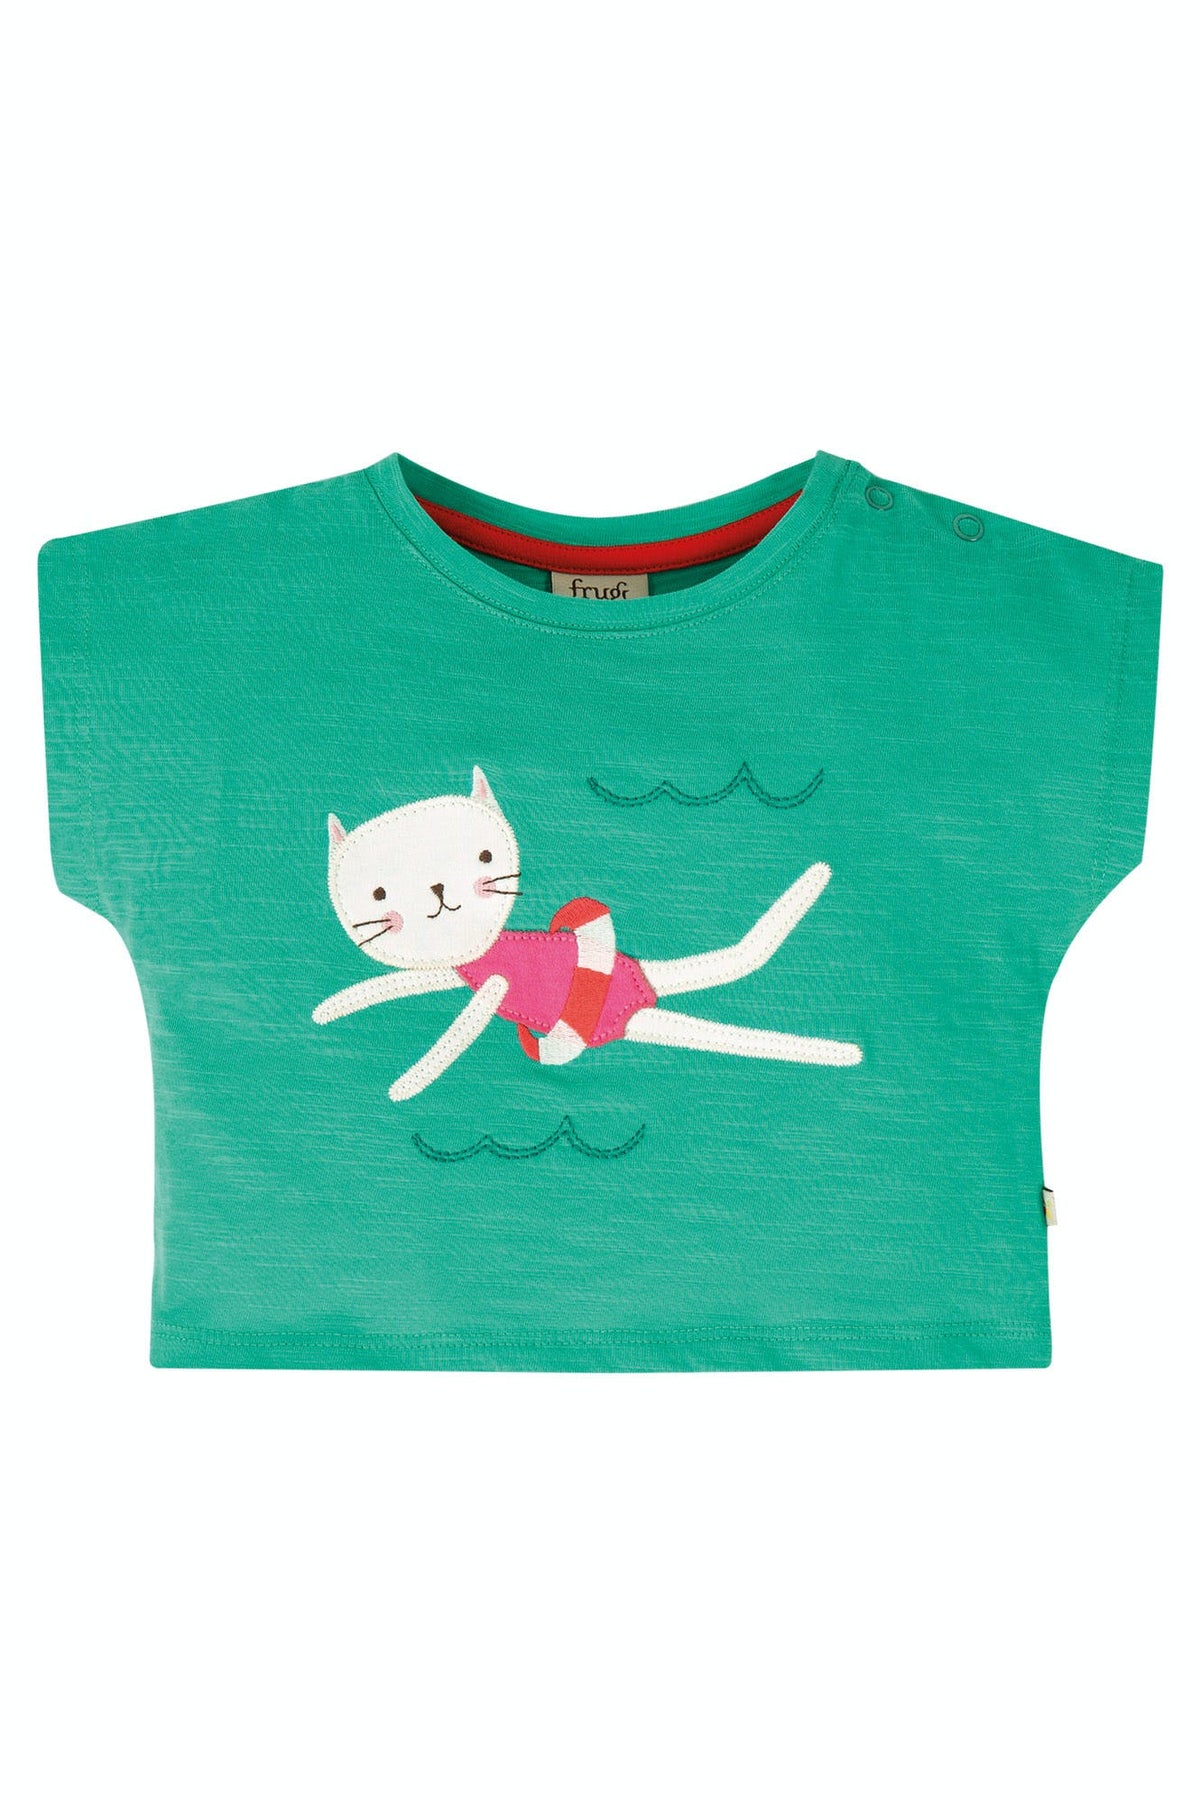 Grünes T-Shirt mit Katze am schwimmen ( 0-3, 3-6 Monate)  von Frugi